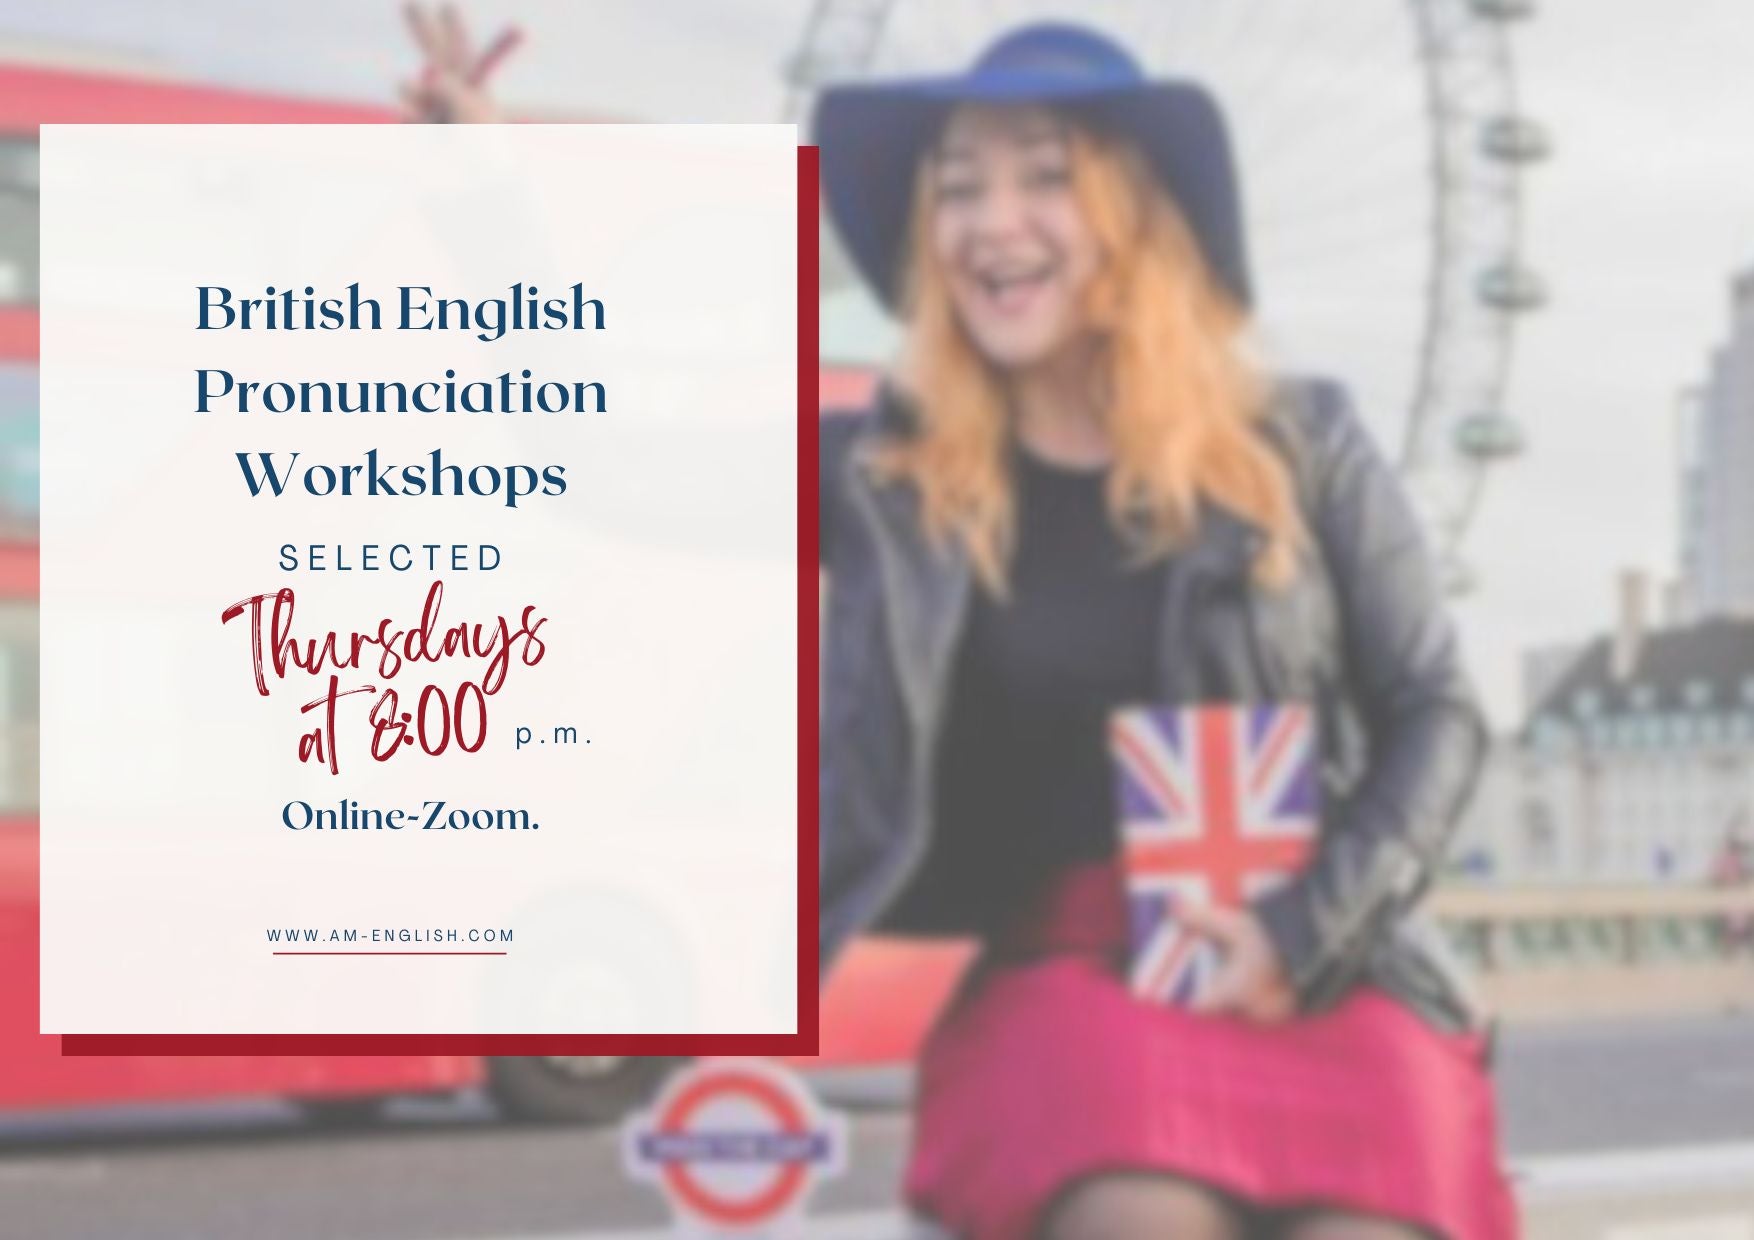 Warsztaty Wymowy Brytyjskiej/ British English Pronunciation Workshops